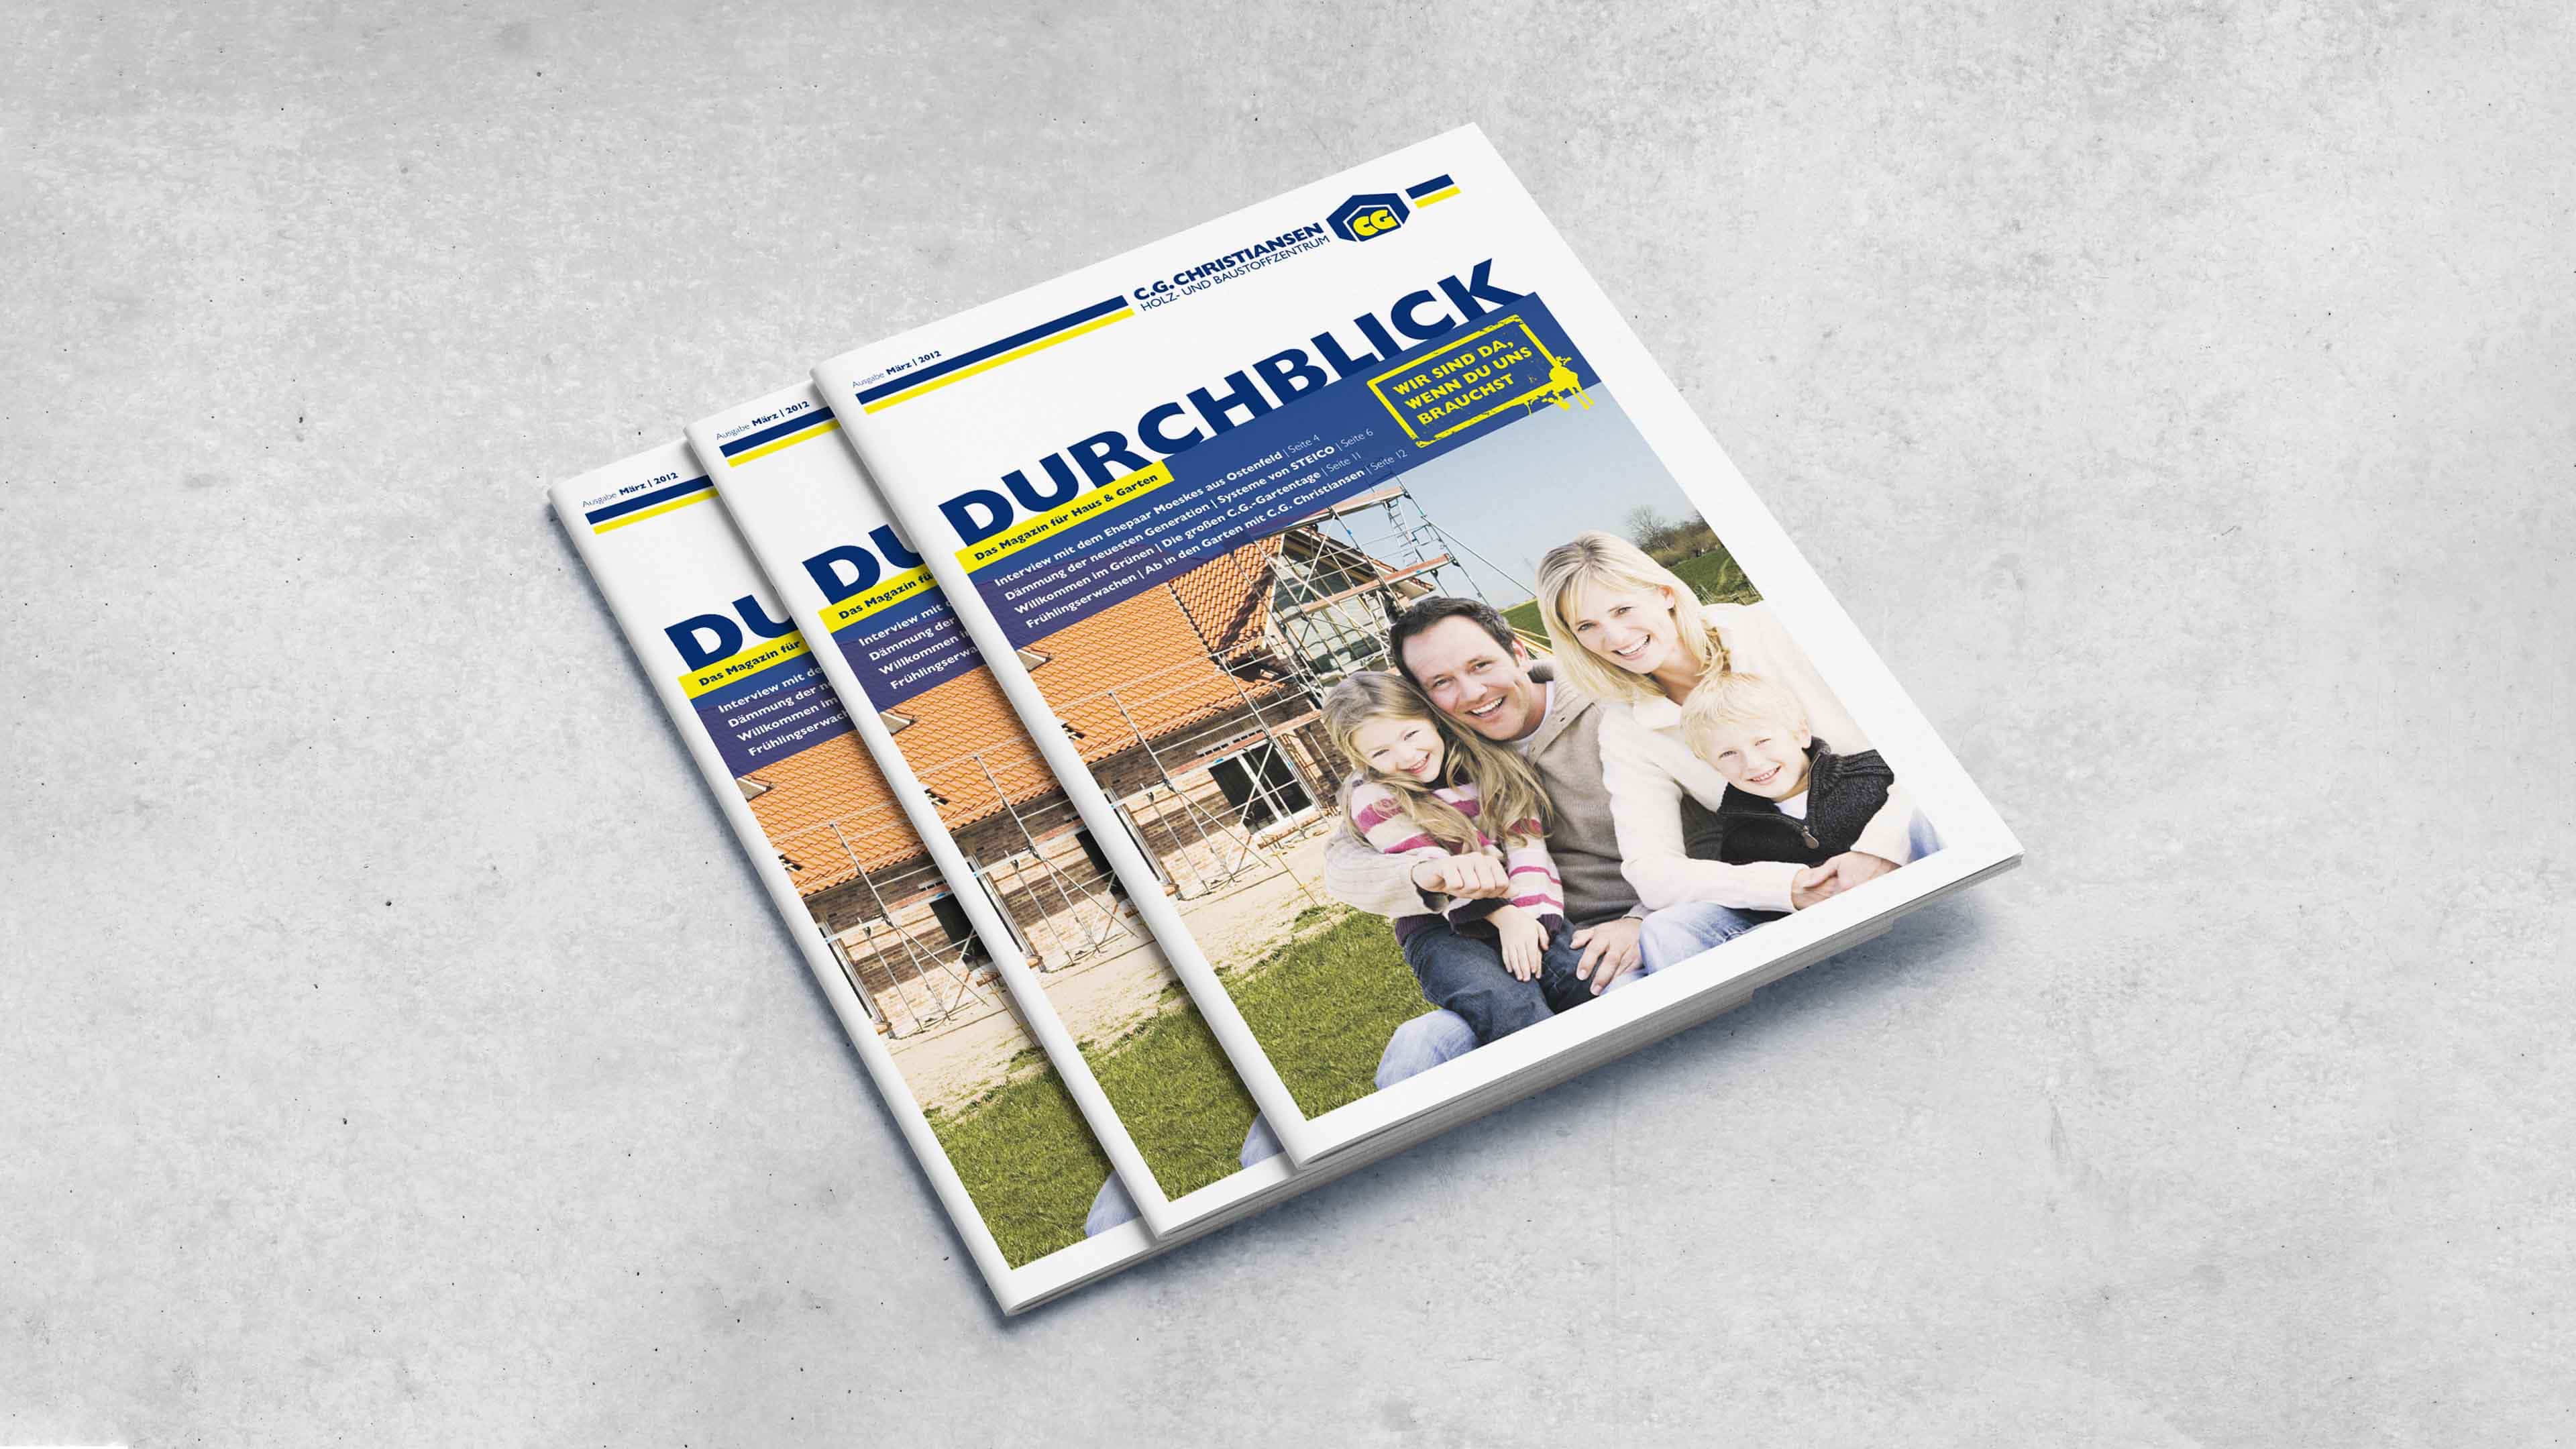 Stapel von drei C.G.-Magazinen zeigt glückliche Familie vorm Hausbau